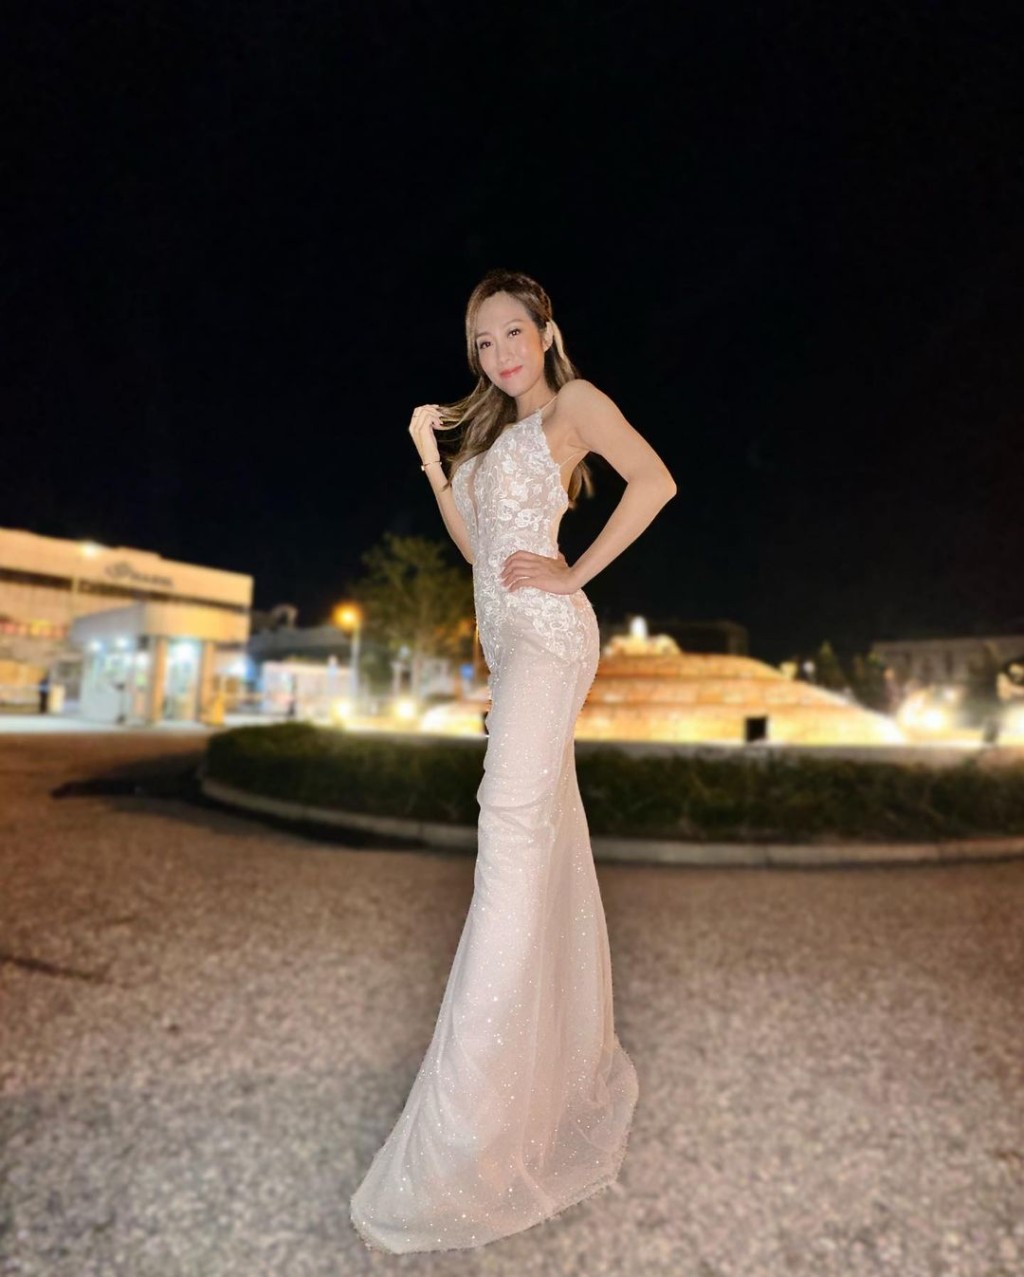 胡美貽是《2017年度香港小姐競選》十一強佳麗。